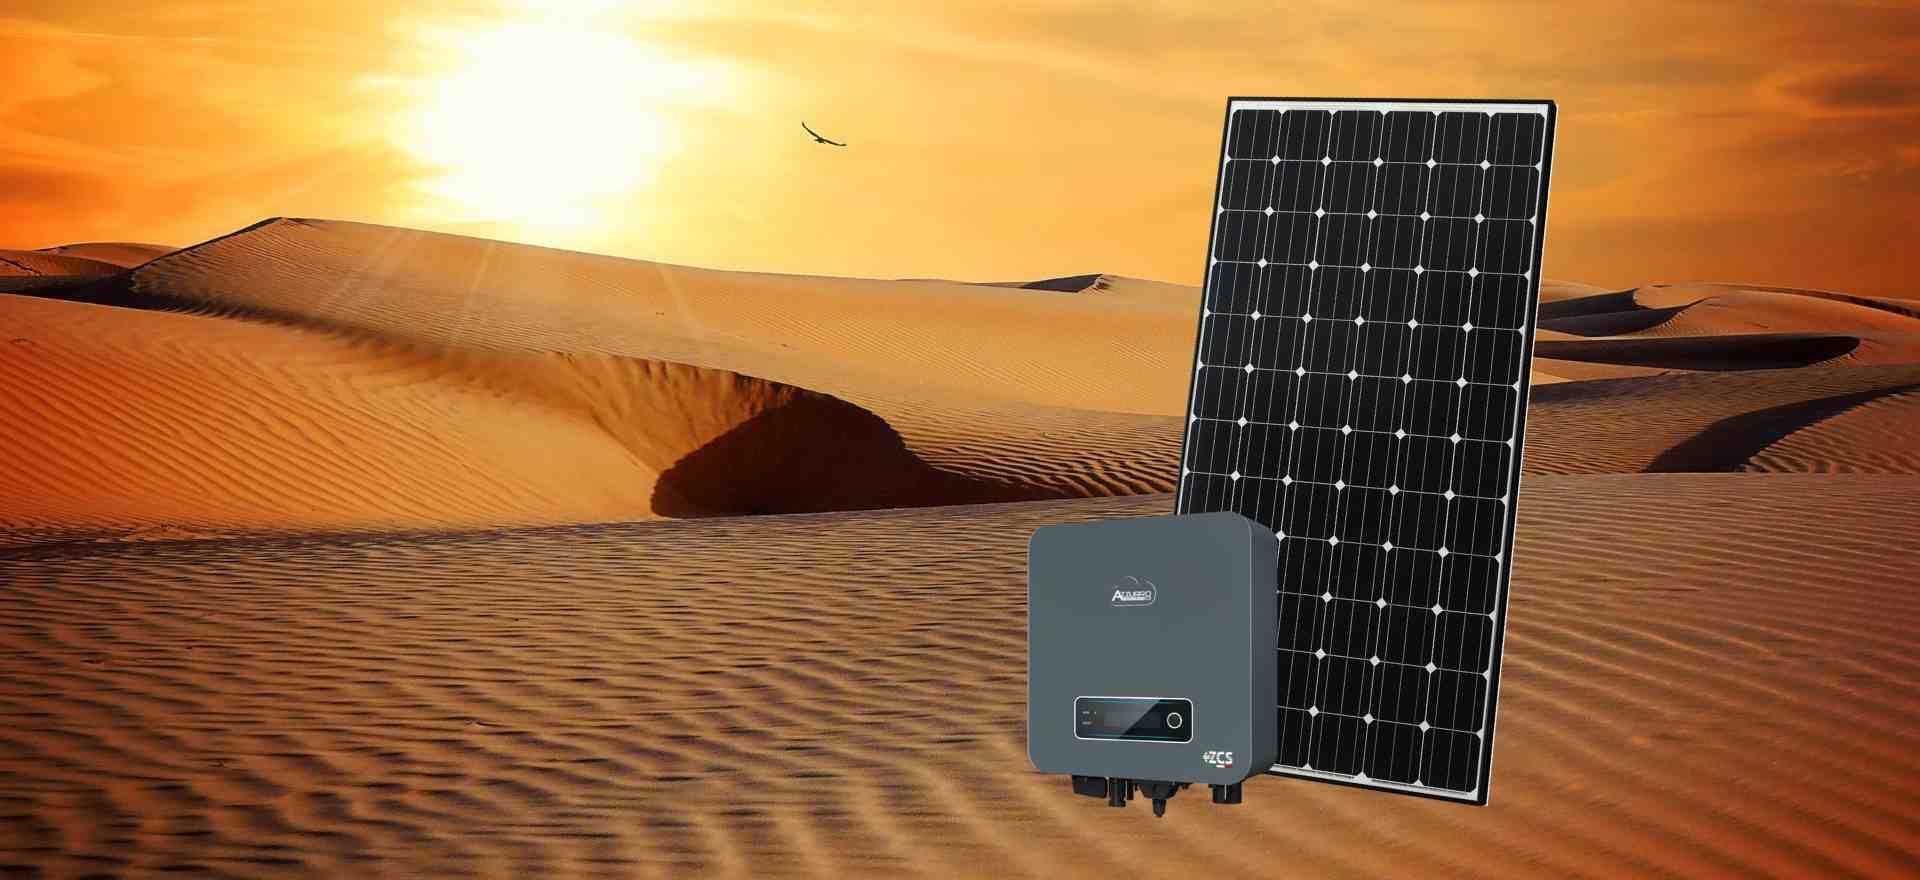 Sullo sfondo dell'immagine di un deserto un pannello fotovoltaico Ja Solar e un inverter ZCS